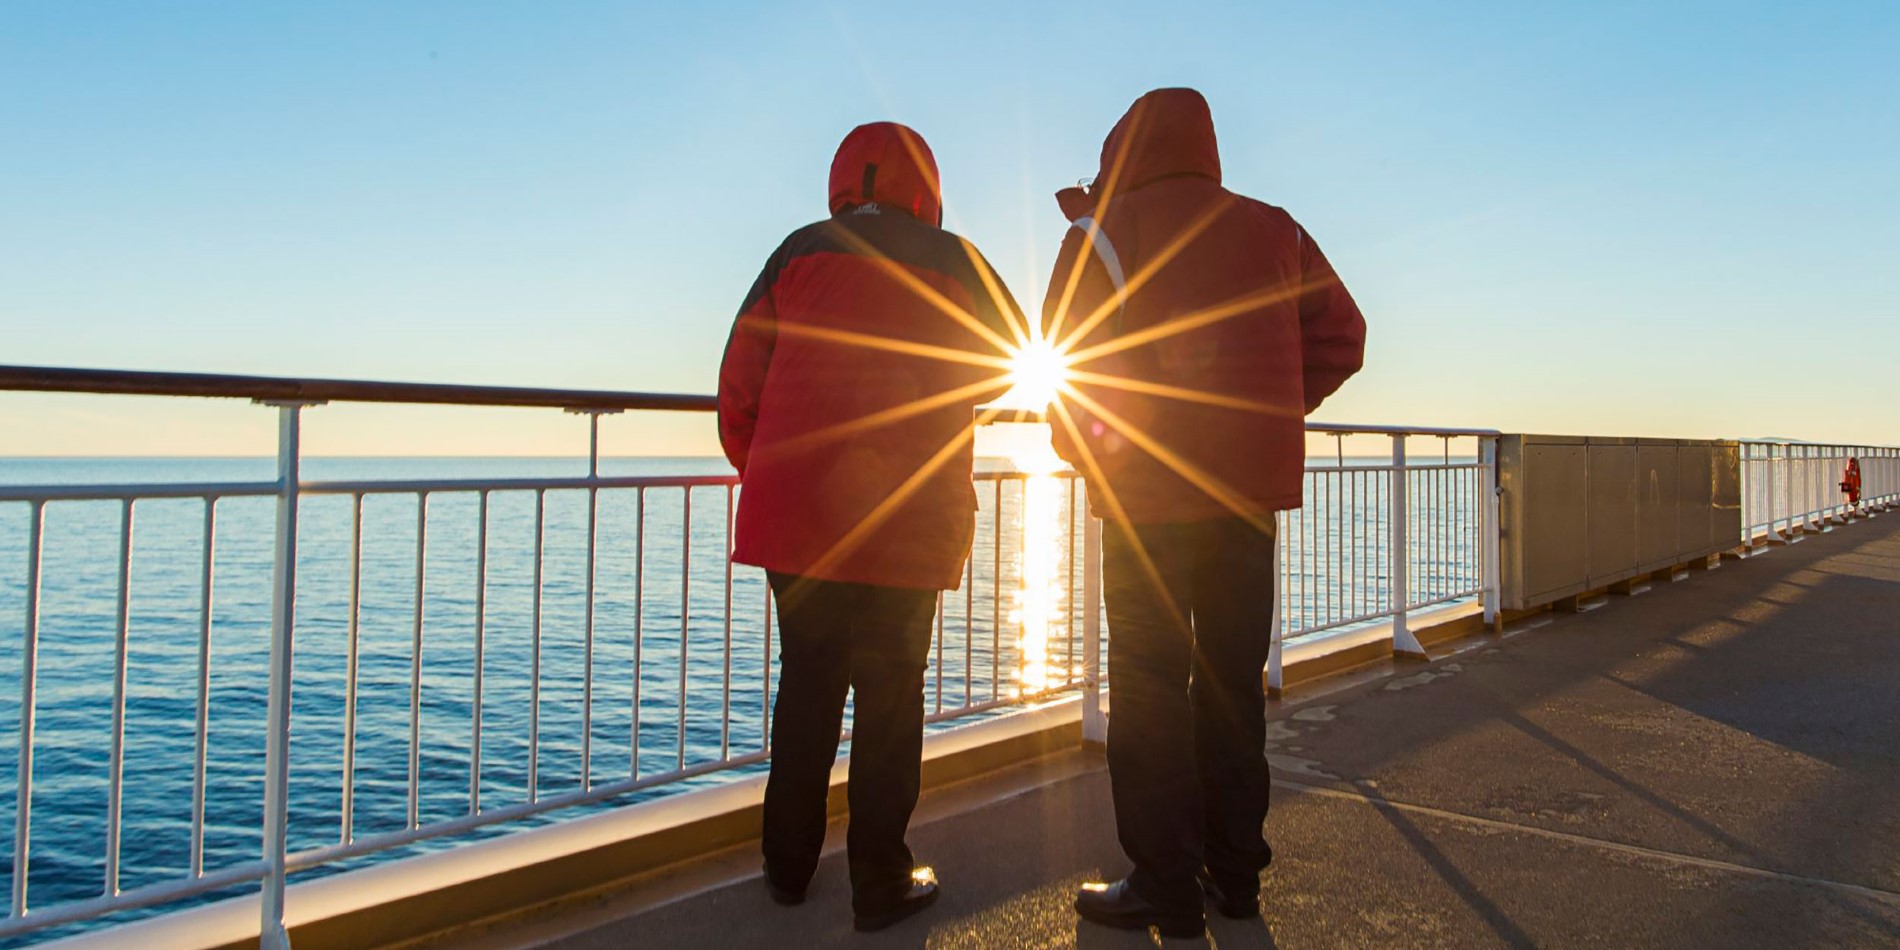 Capture the Midnight Sun along the Norwegian Coast